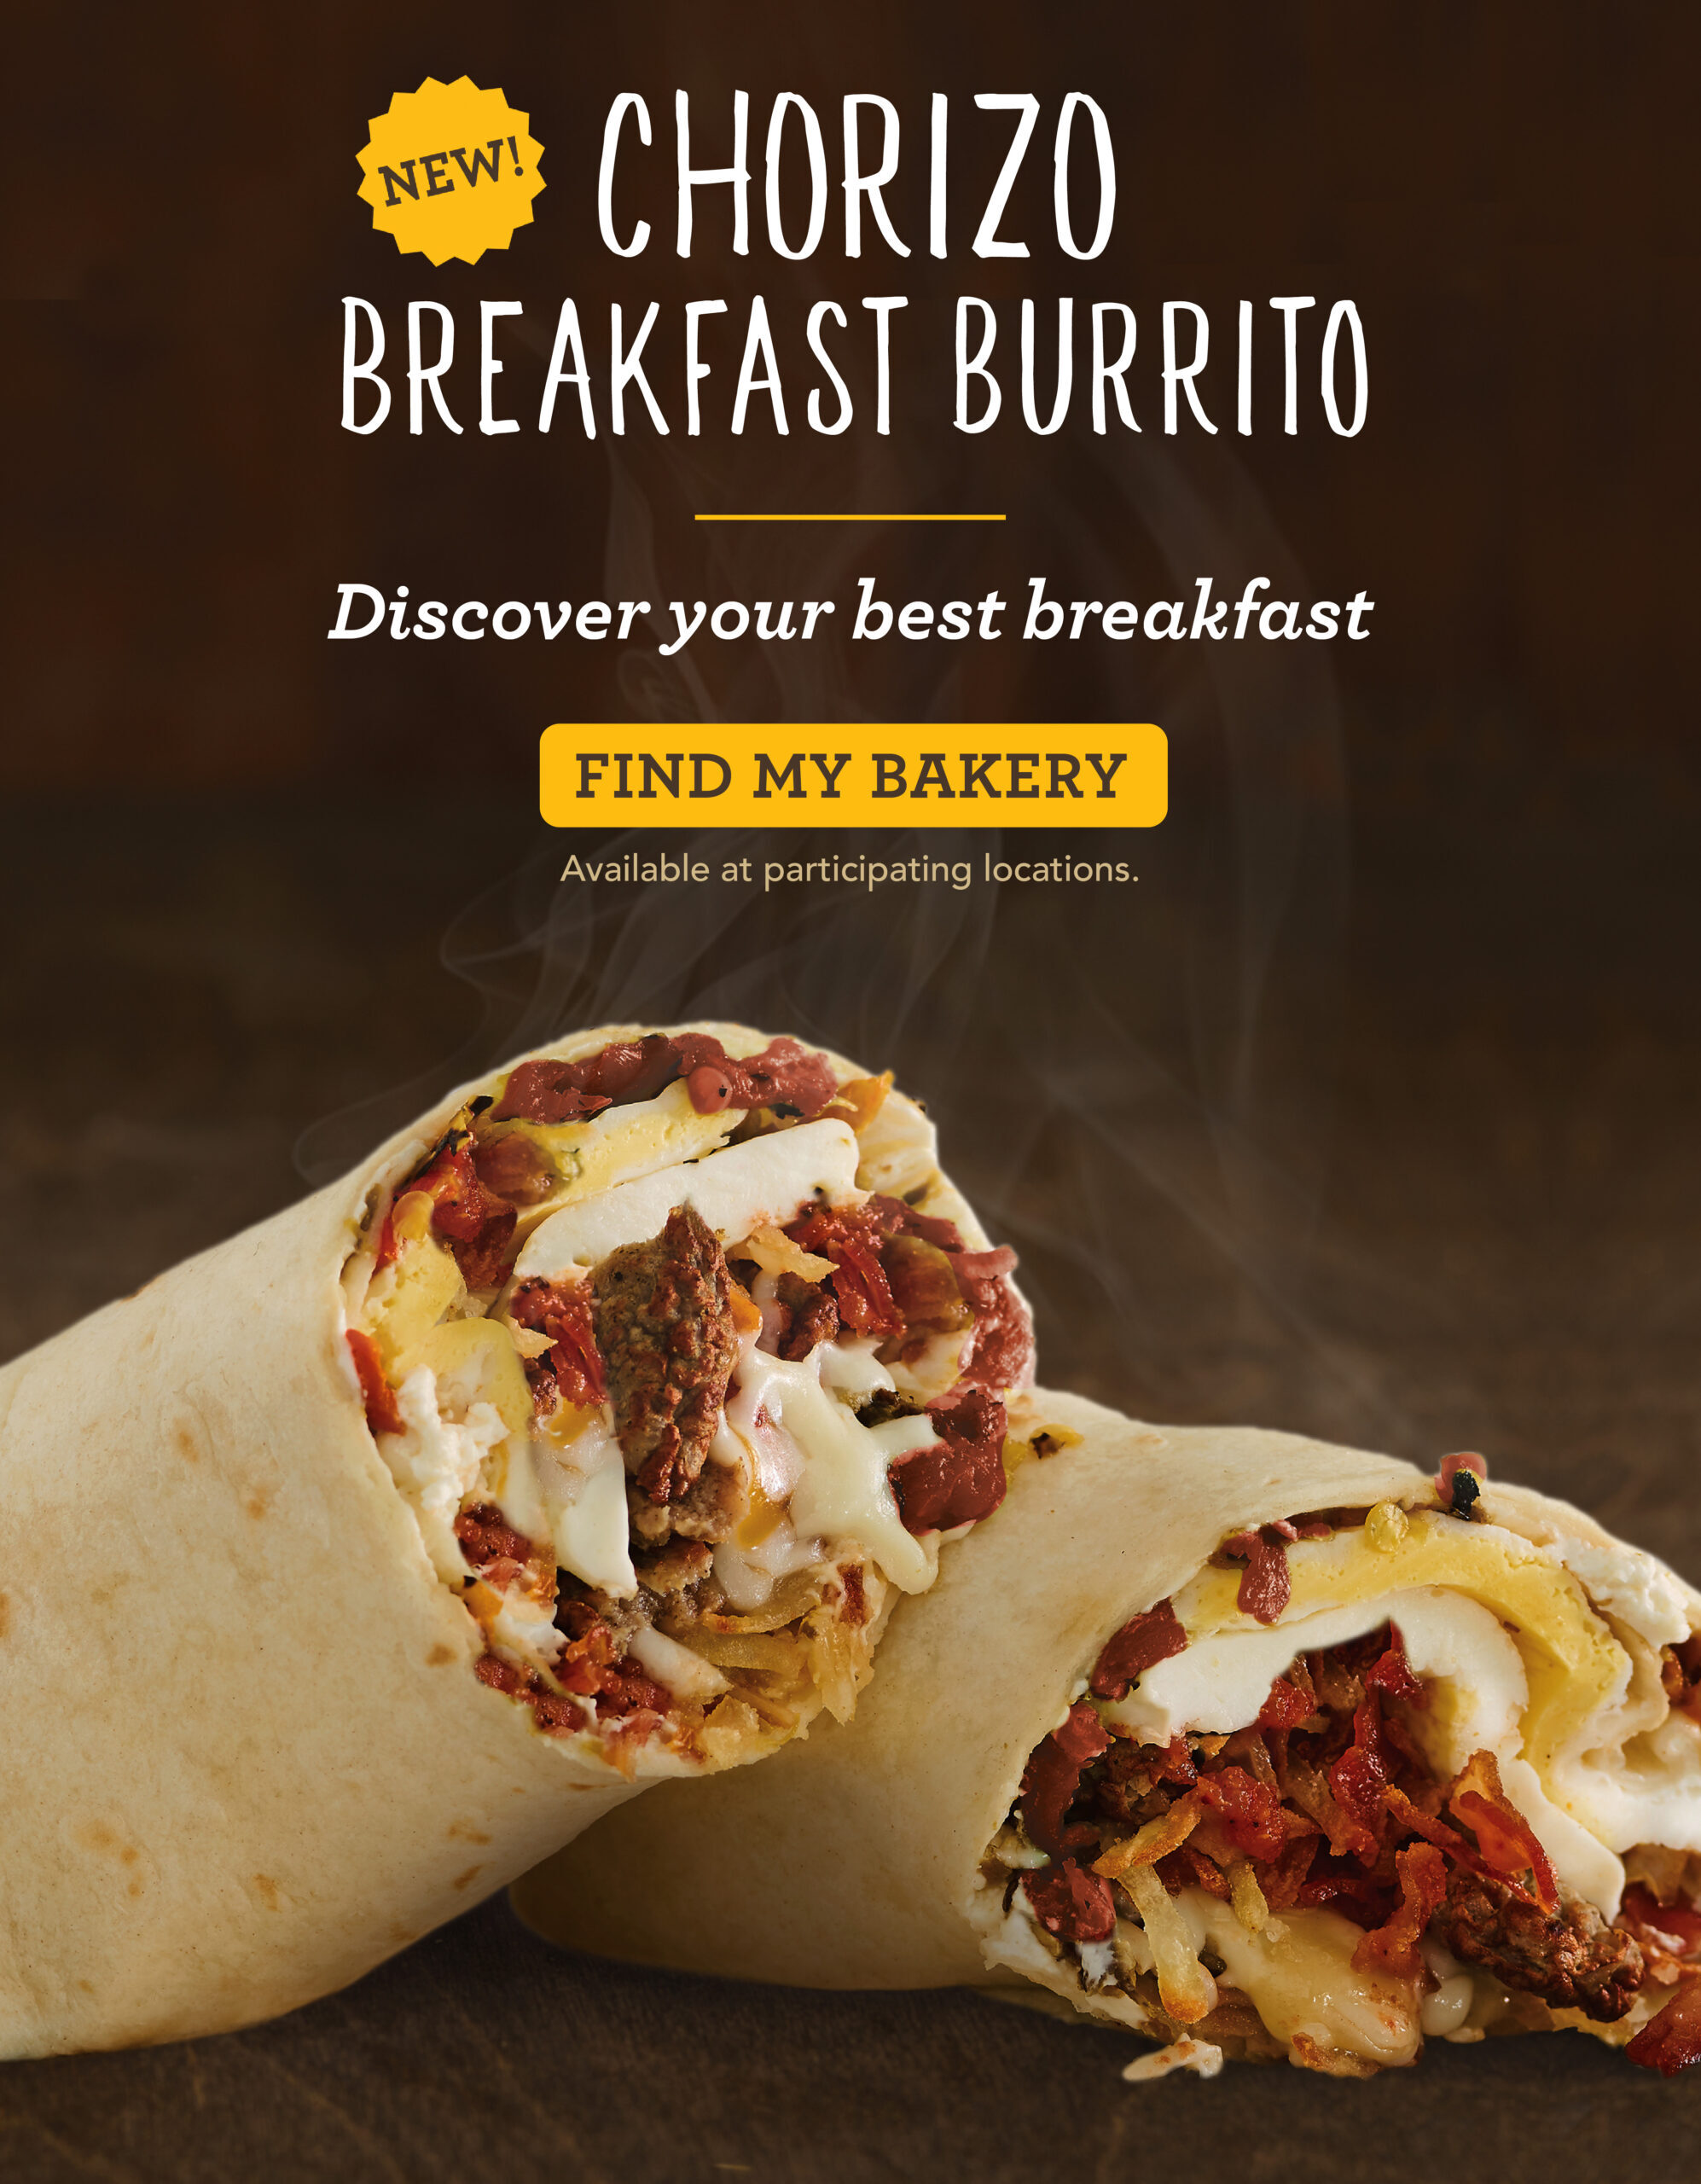 New Chorizo Breakfast Burrito. Find my bakery.